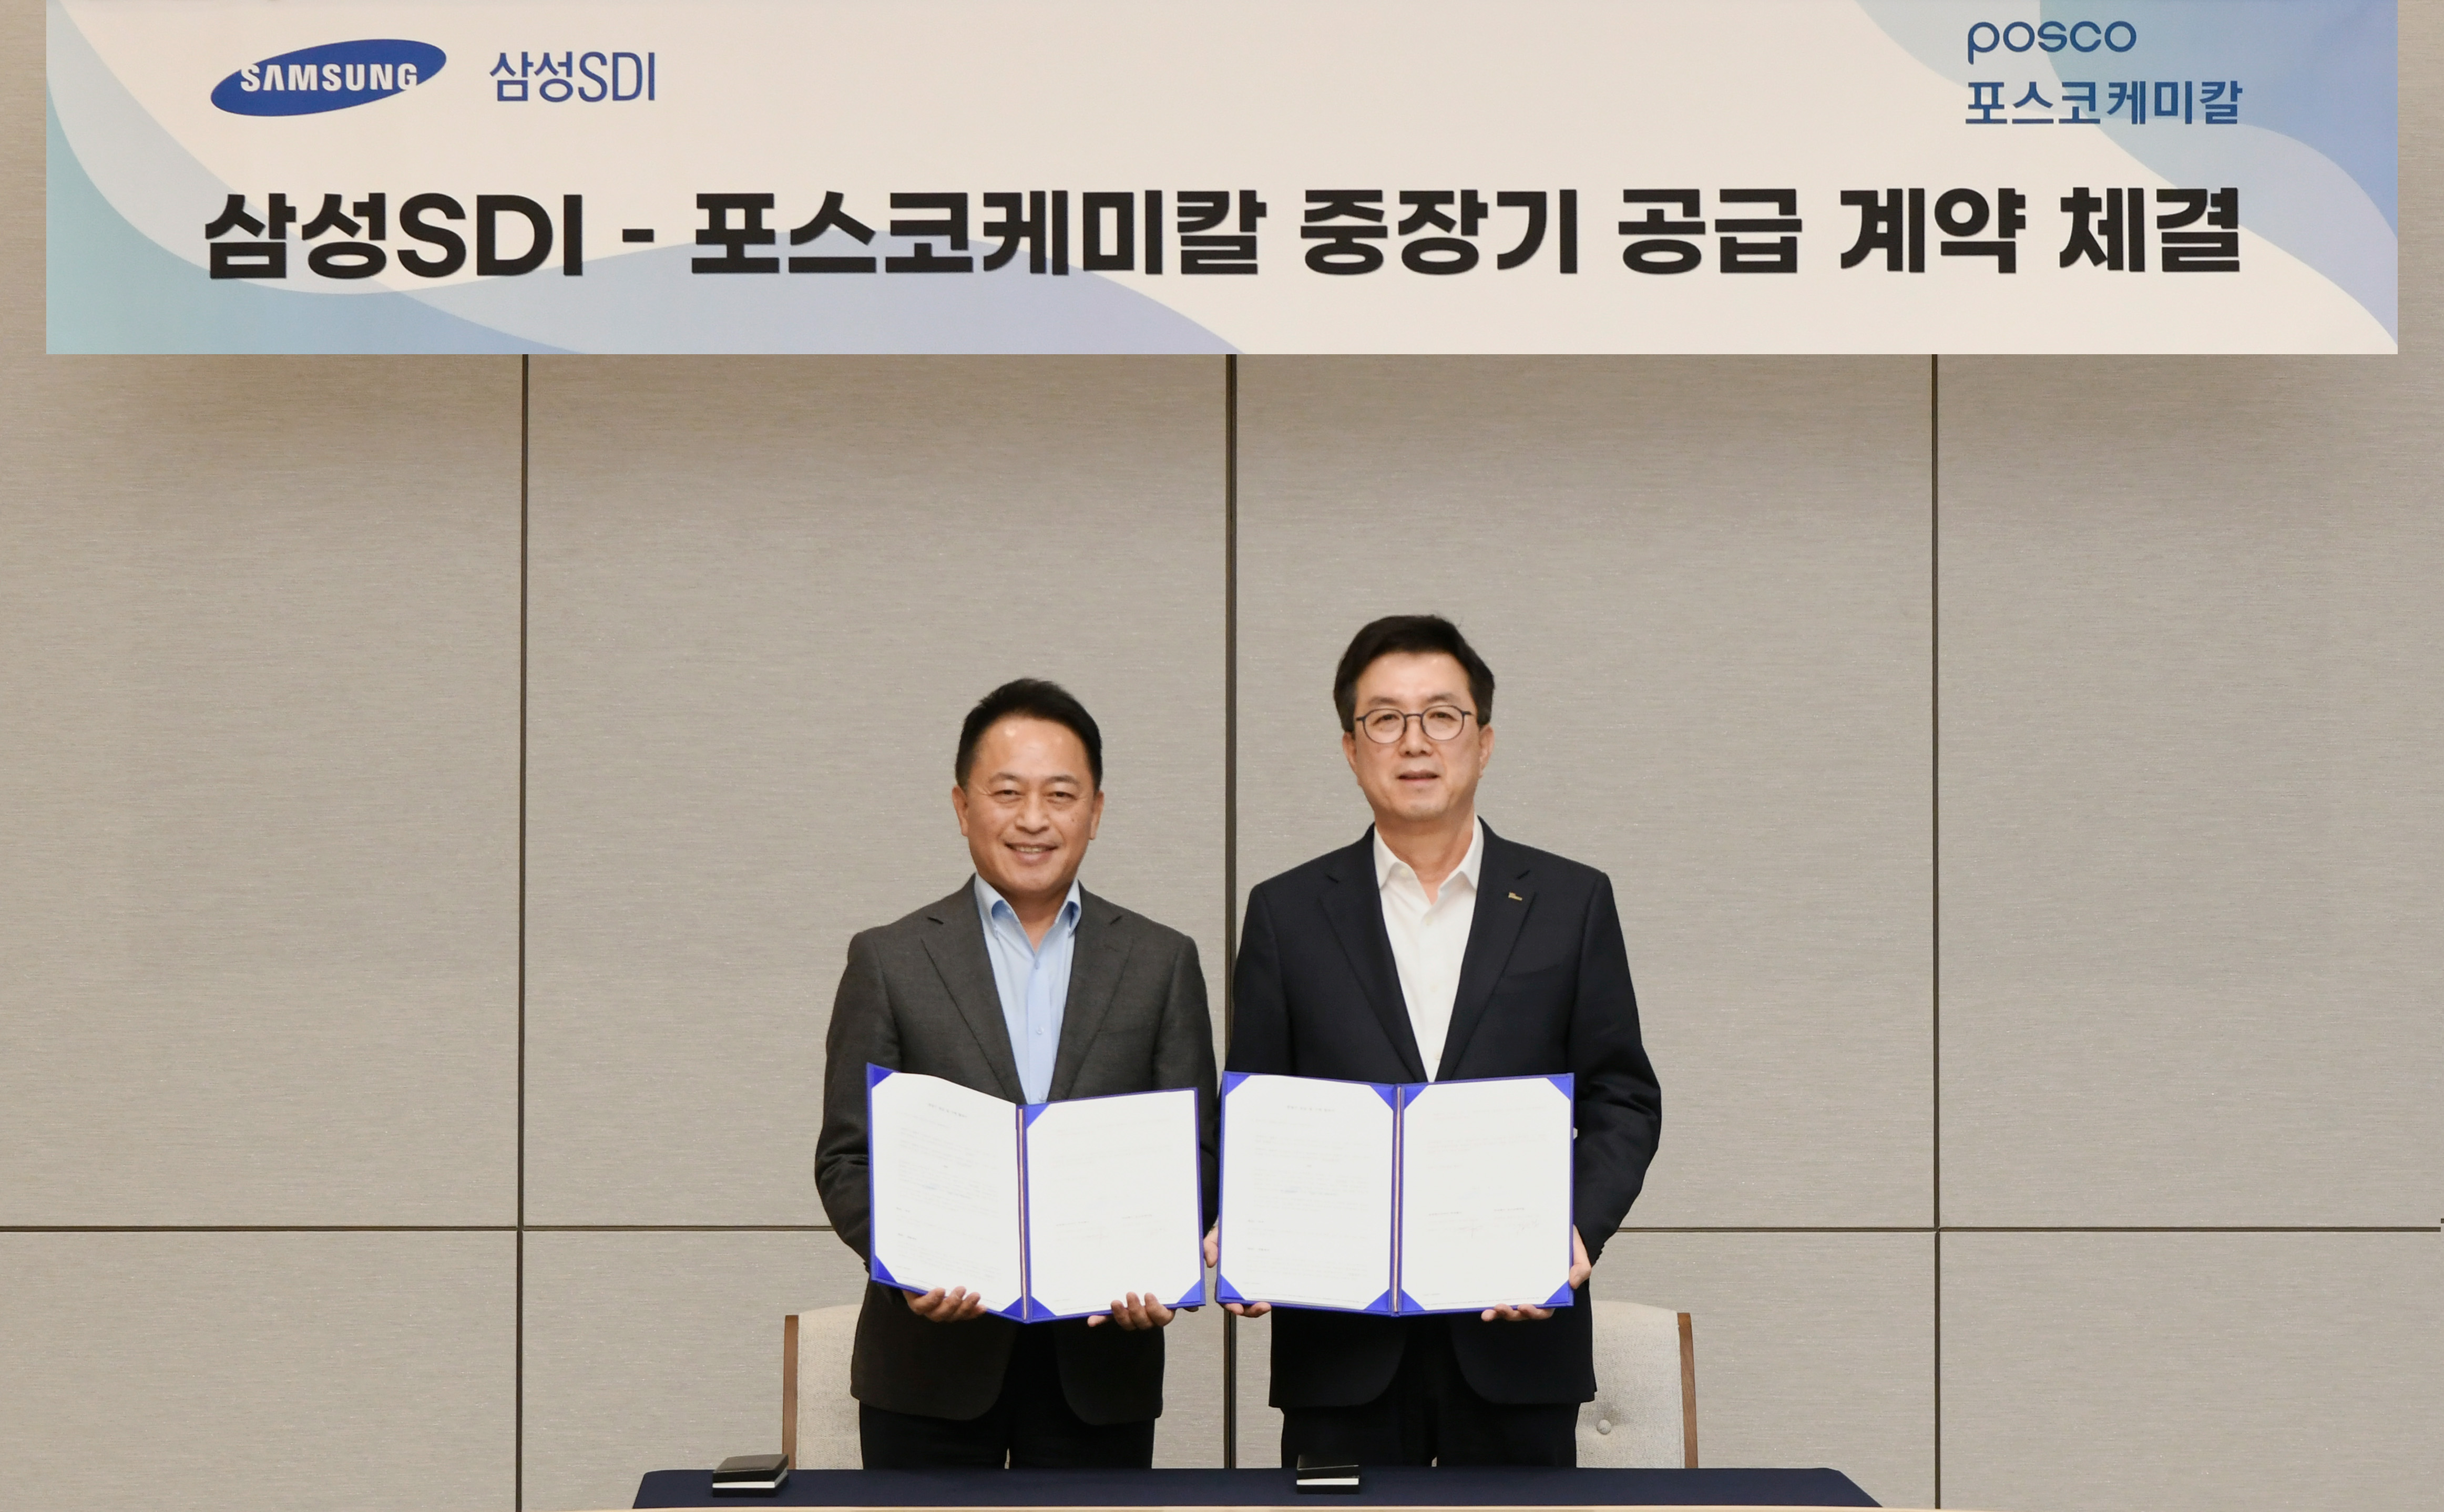 포스코케미칼과 삼성SDI가 양극재 중장기 공급계약을 체결했다. 삼성SDI 최윤호 사장(사진 왼쪽), 포스코케미칼 김준형 사장(오른쪽)의 모습이다.